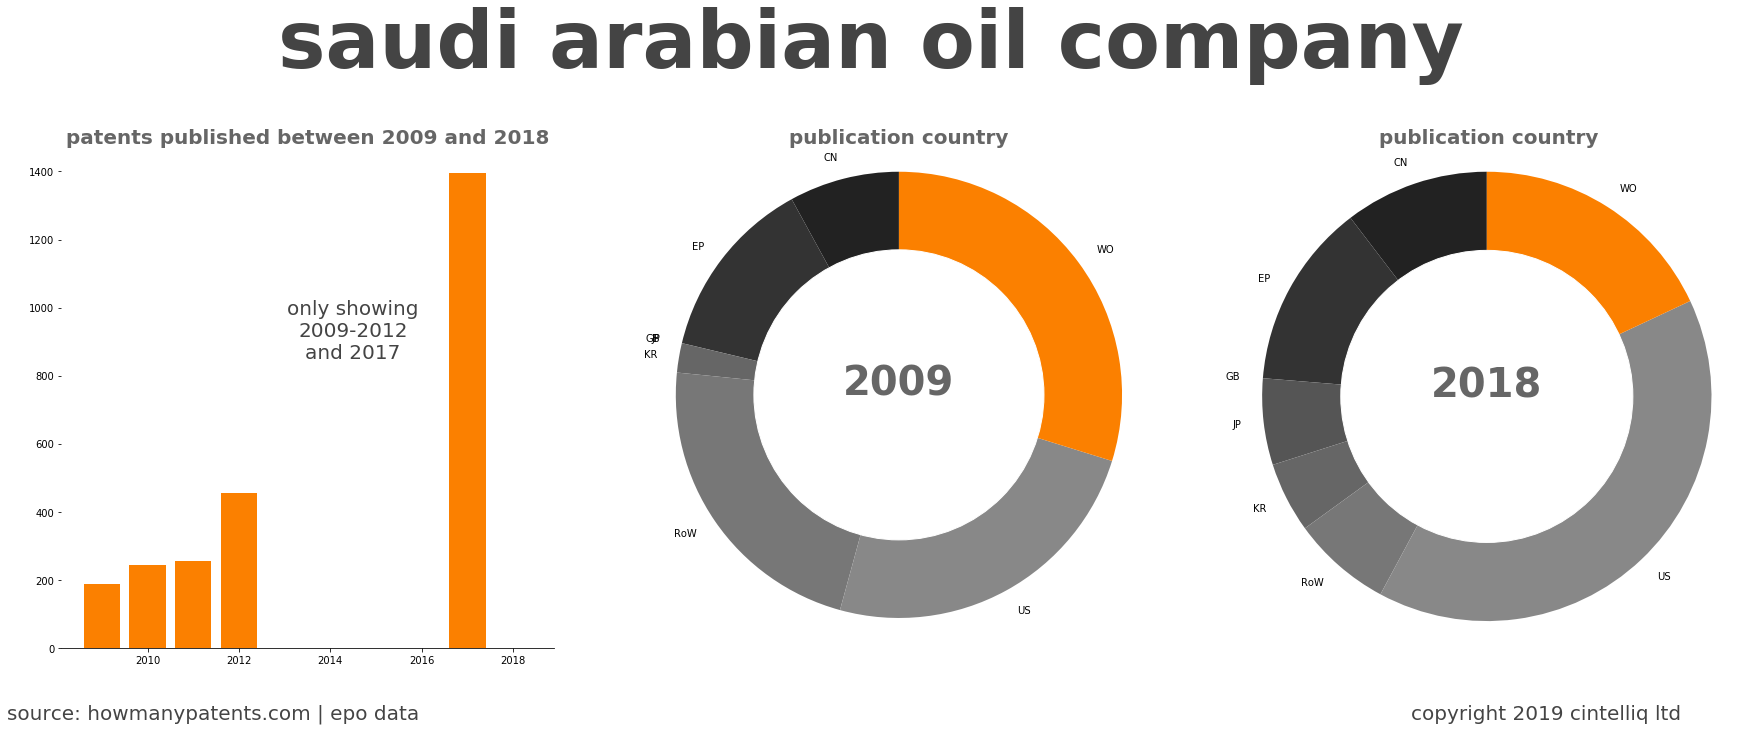 summary of patents for Saudi Arabian Oil Company